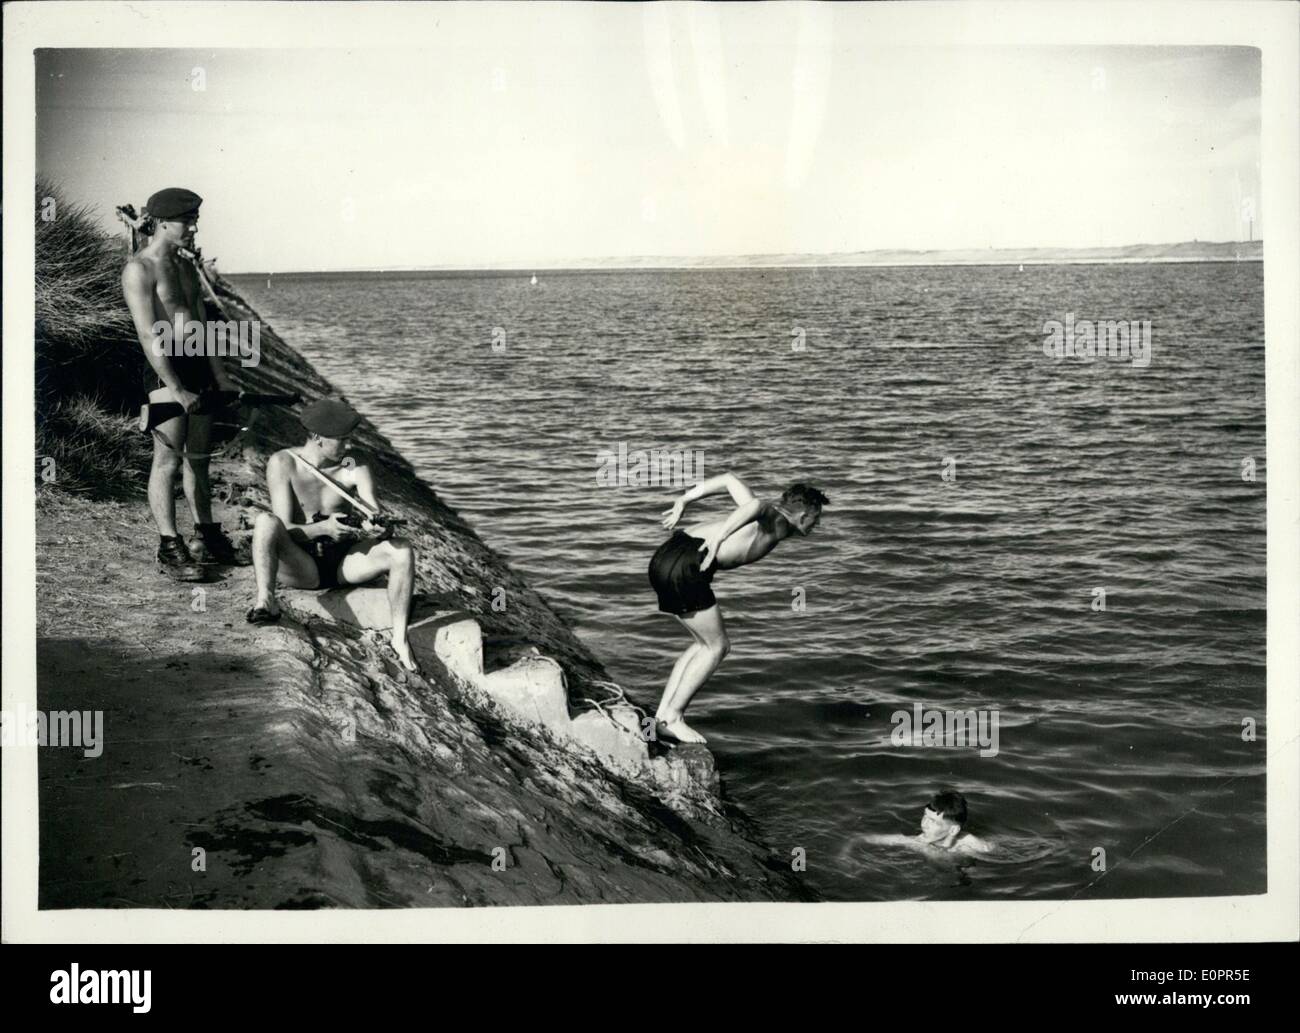 11 novembre 1956 - Les troupes britanniques aller nager dans le canal de Suez... En attente d'arrivée de l'ONU Force de police. Parachutistes britanniques sont allés nager à El la capitation - sur le Canal de Suez - près de Kantara - peu après le cessez-le-feu dans l'intervention franco-britannique en Égypte. Les troupes sont maintenant creusé dans il y attendent l'arrivée de l'ONU force de police.. Ils ne sont qu'à quelques centaines de mètres de la position égyptienne.. Photo montre :- parachutistes britanniques pendant leur baignade à la capitation dans El ombre de la position égyptienne Banque D'Images